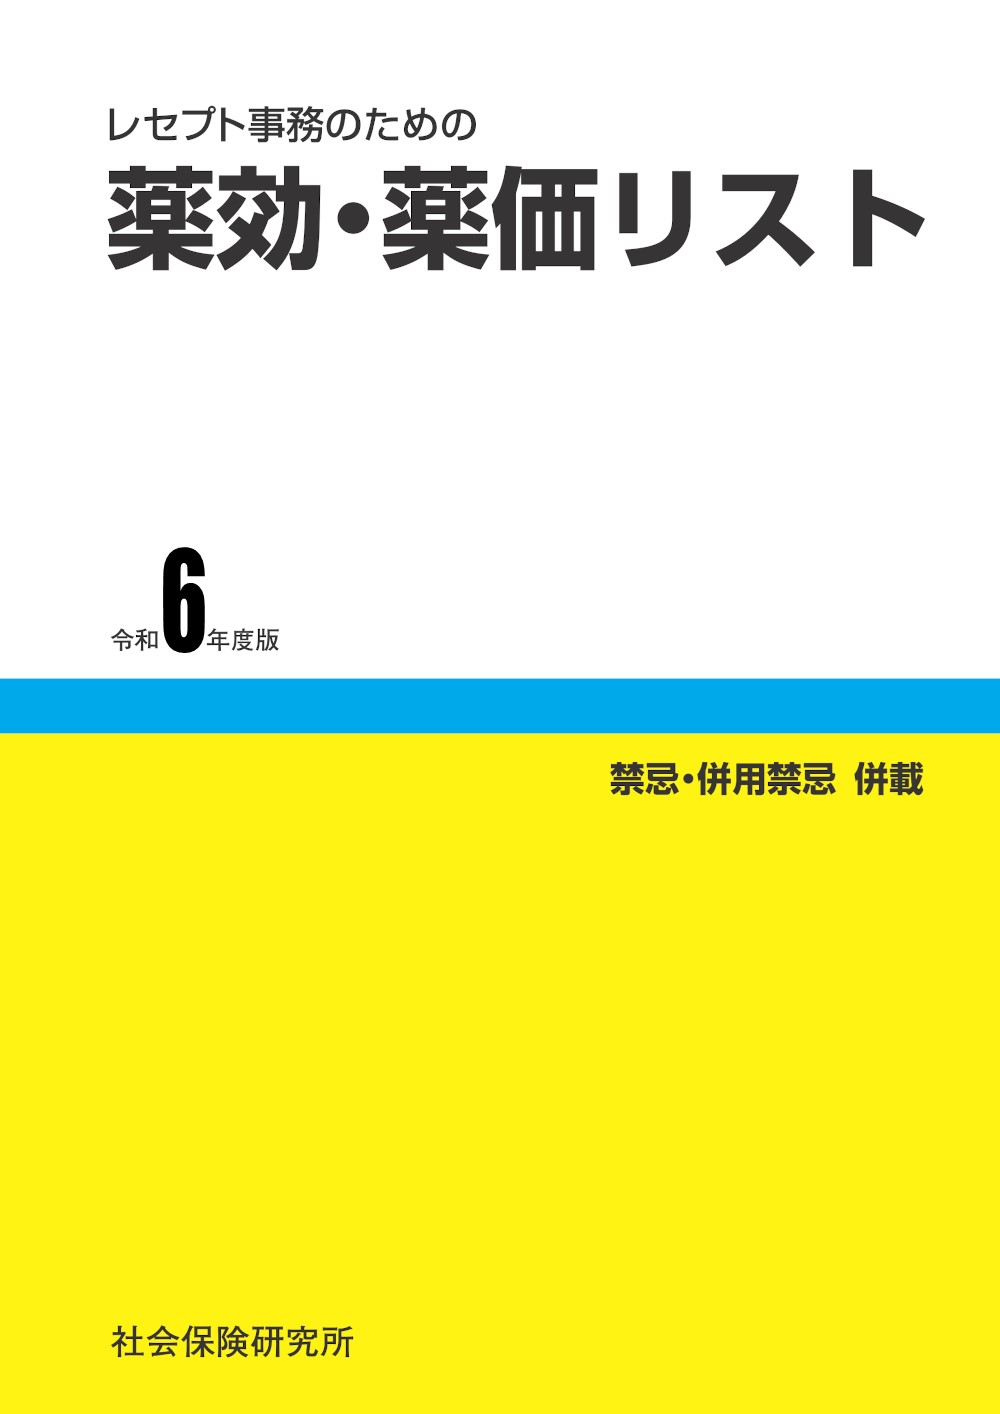 〈2020年版〉管理栄養士 国家試験対策完全合格教本〈上巻〉 (オープンセサミシリーズ) 東京アカデミー